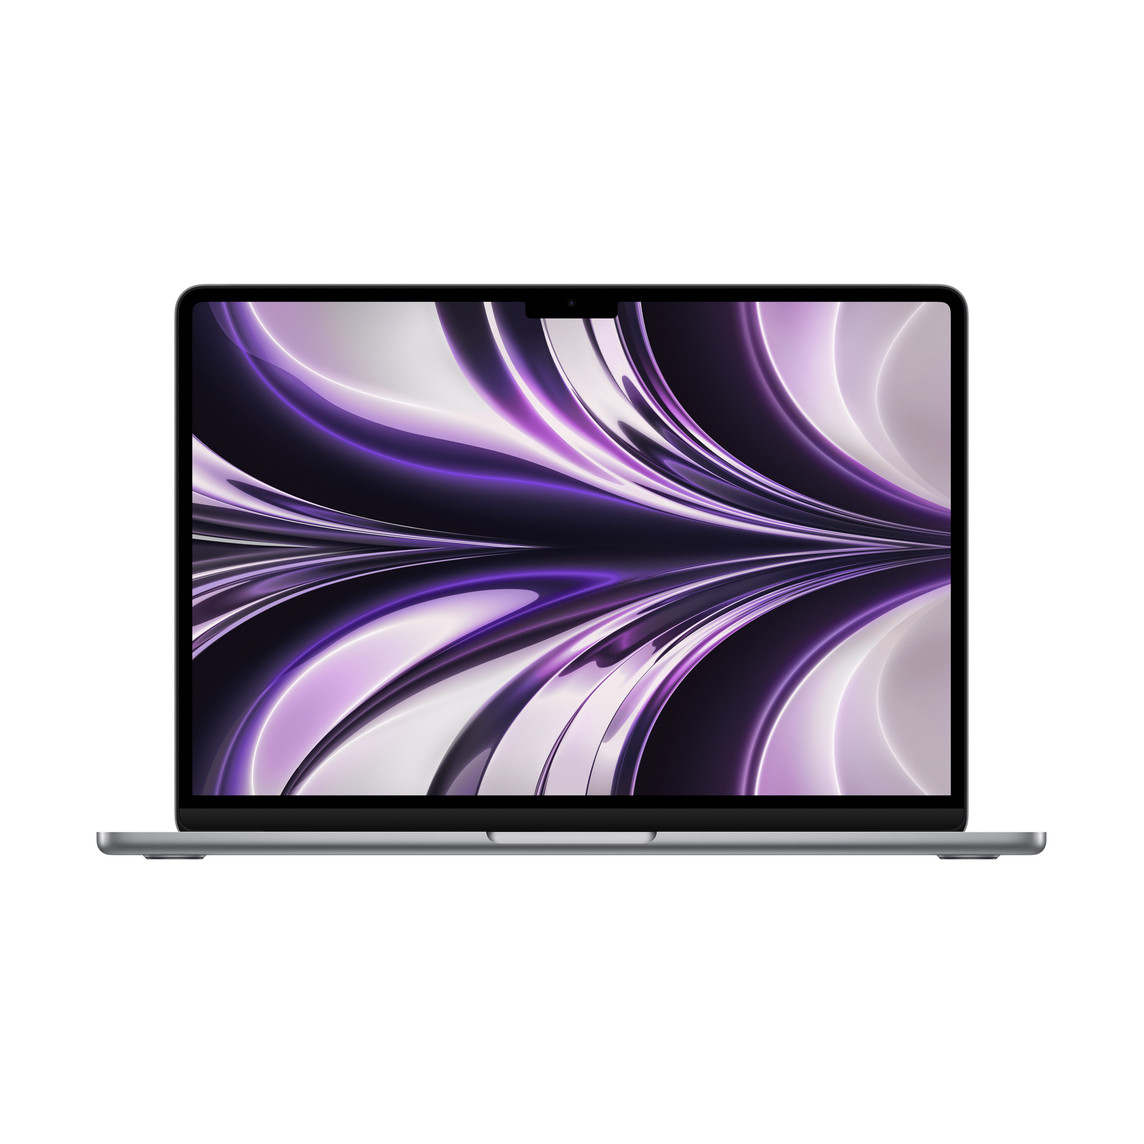 Opengeklapte MacBook Air, dunne rand, FaceTime HD-camera, uitstekende voetjes, afgeronde hoeken, kleur spacegrijs